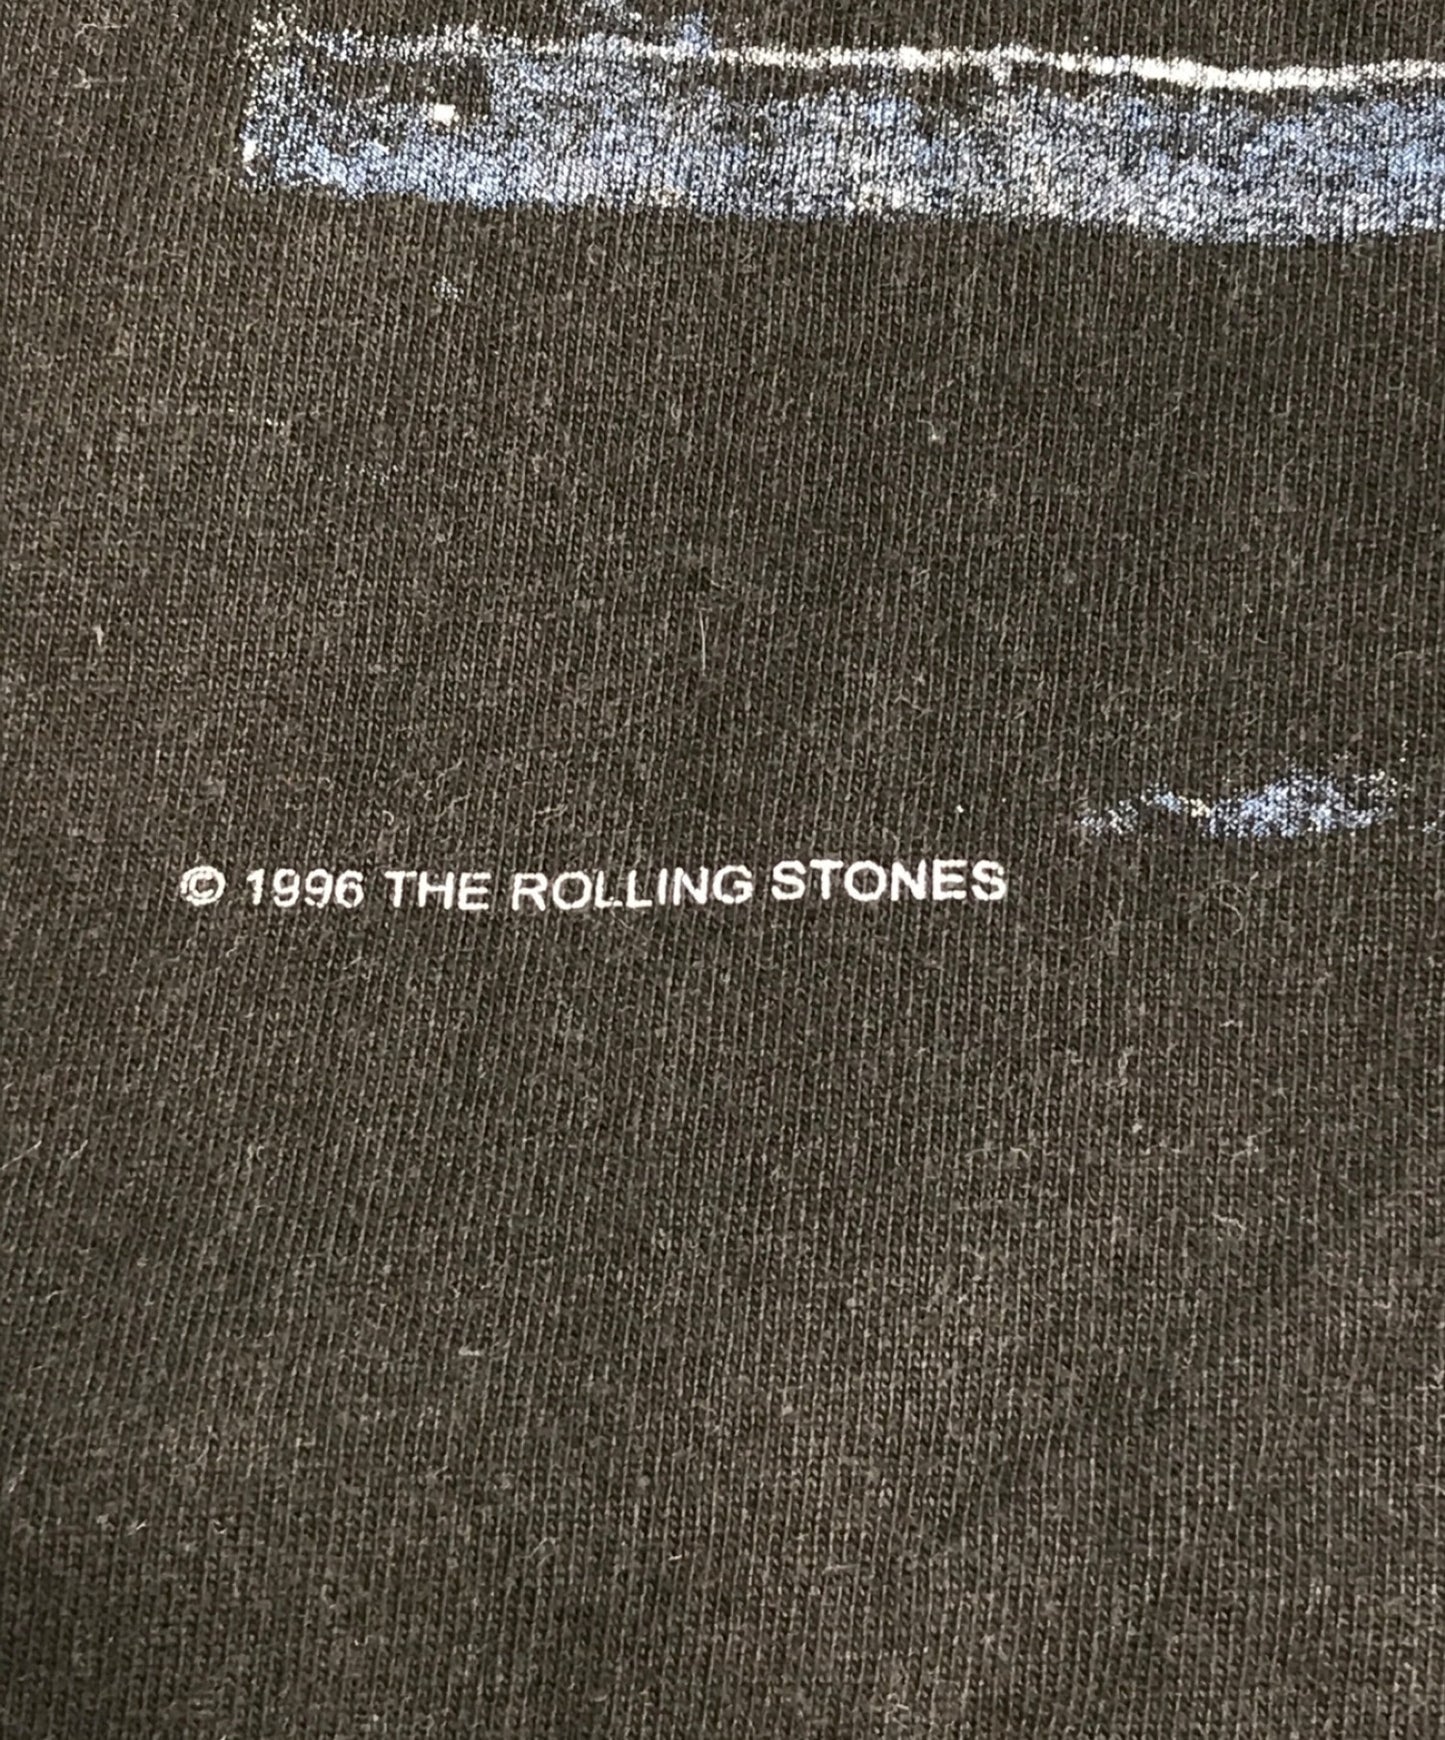 เสื้อยืด Band Rolling Stones